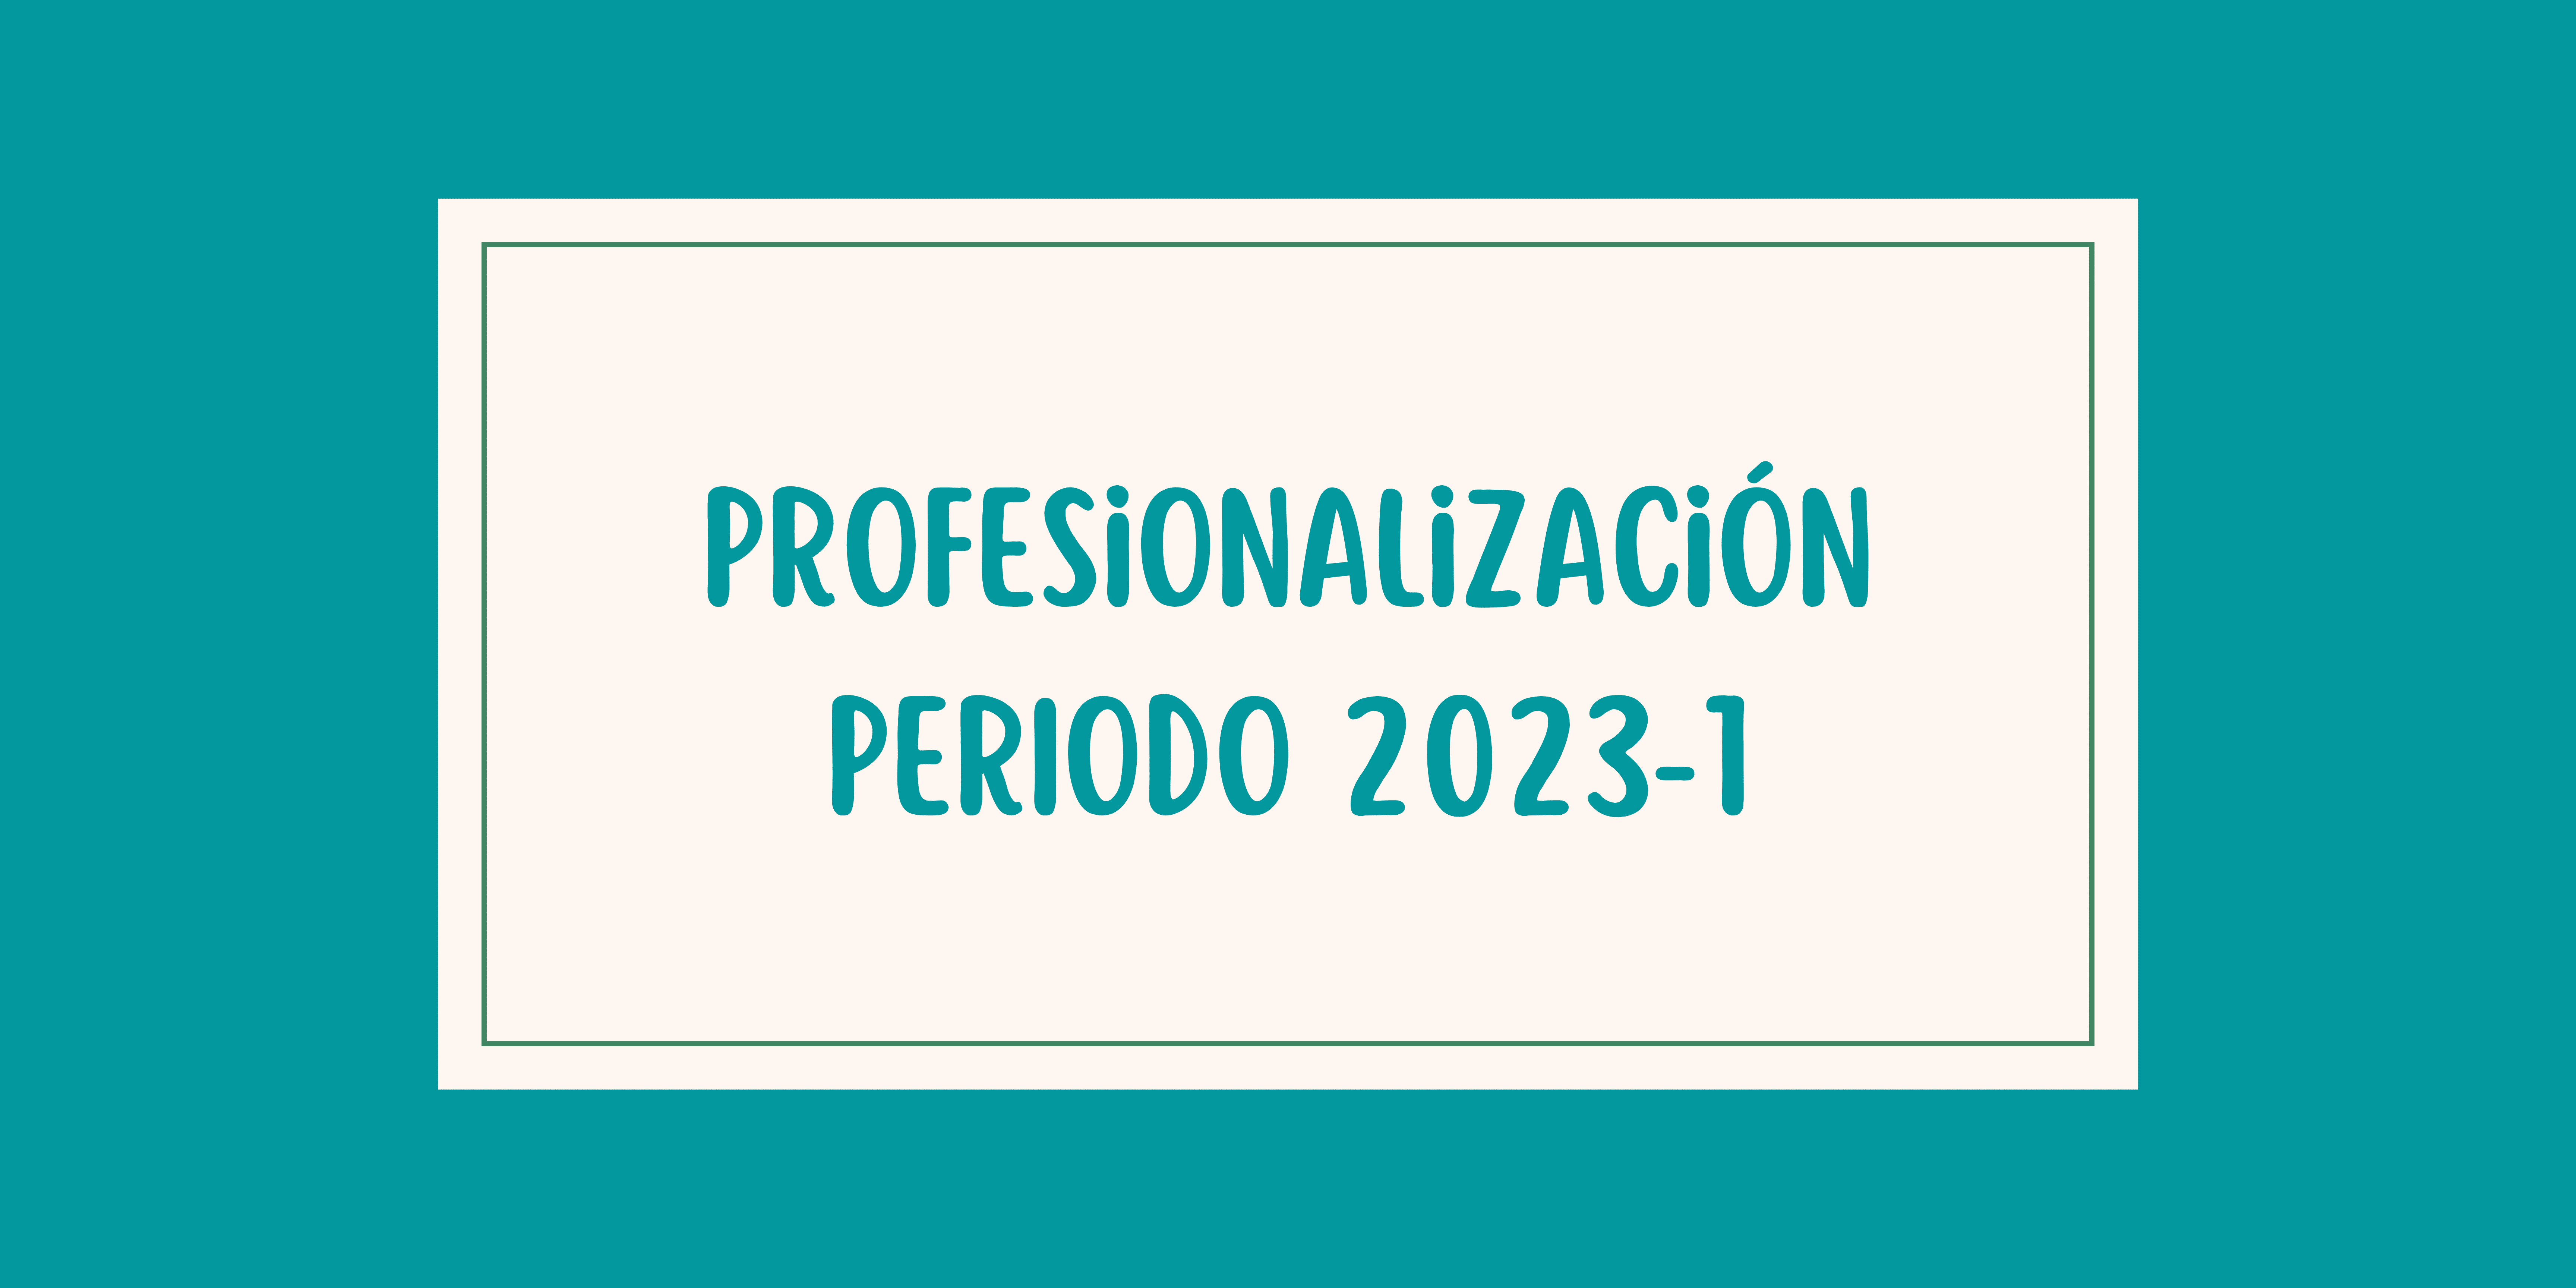  Profesionalización periodo 2023-1